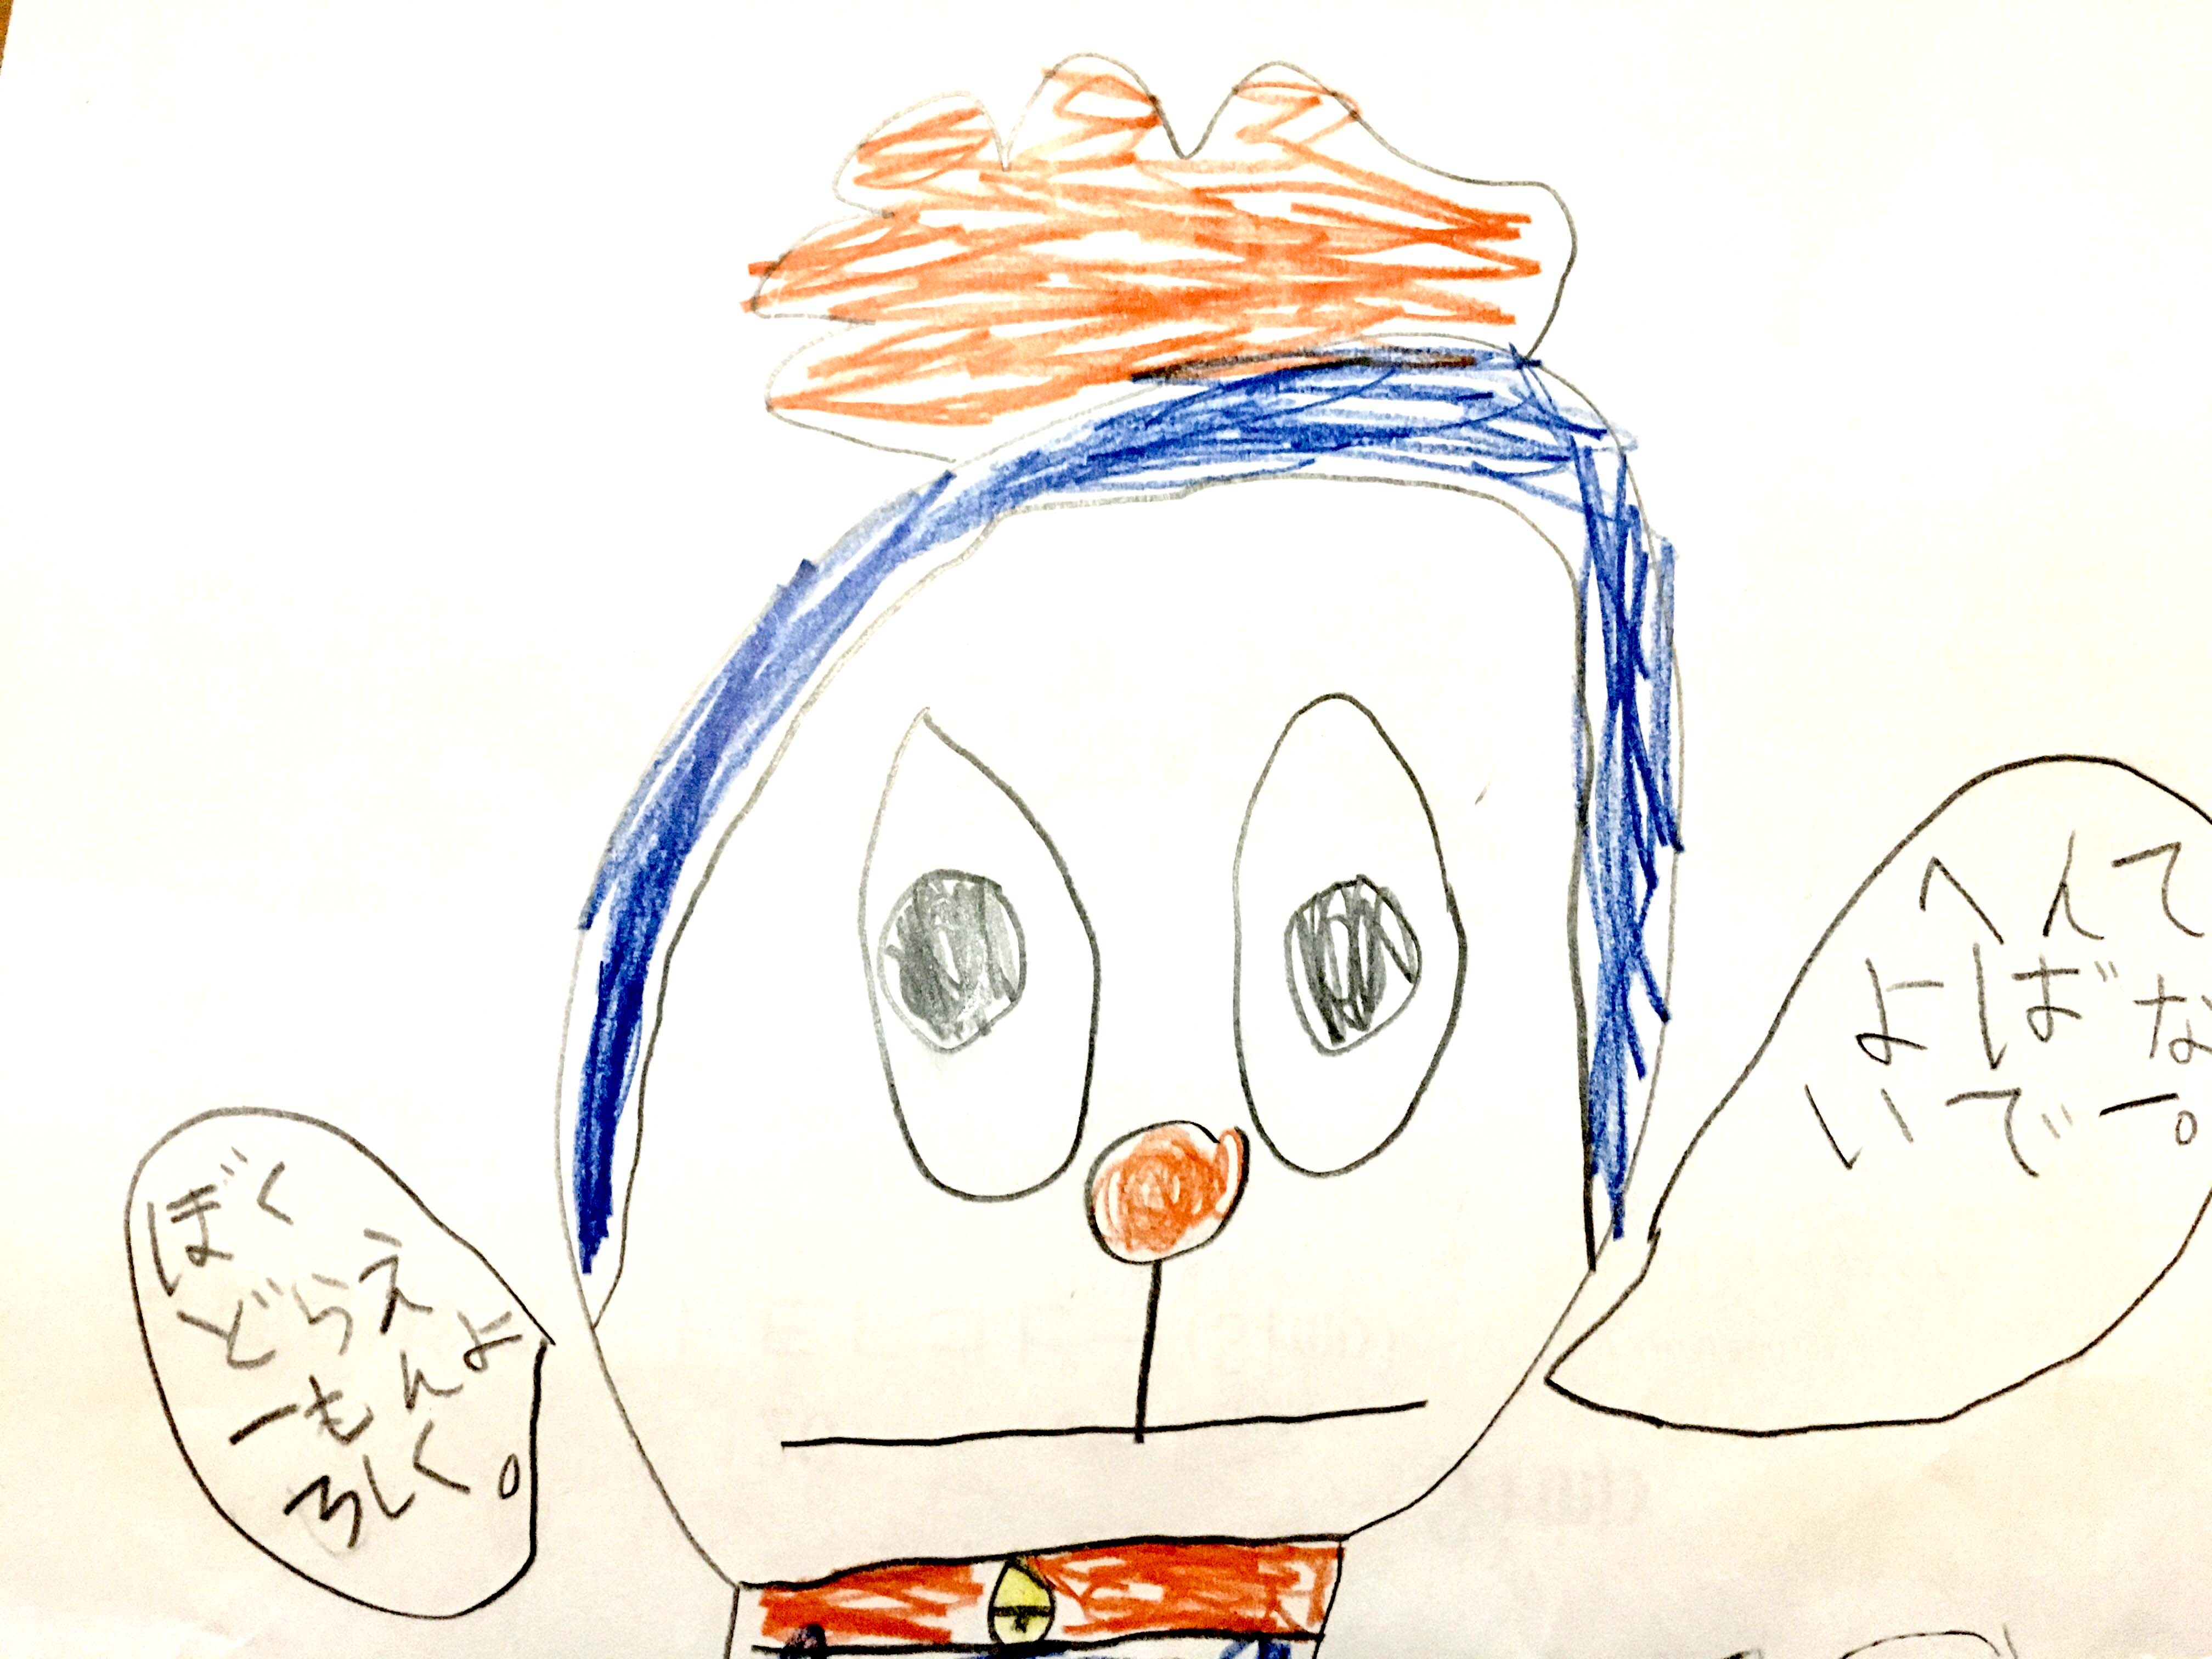 【 オーダーメイド 】子どもが描いた『どらえーもん』でリングを作りたいです。